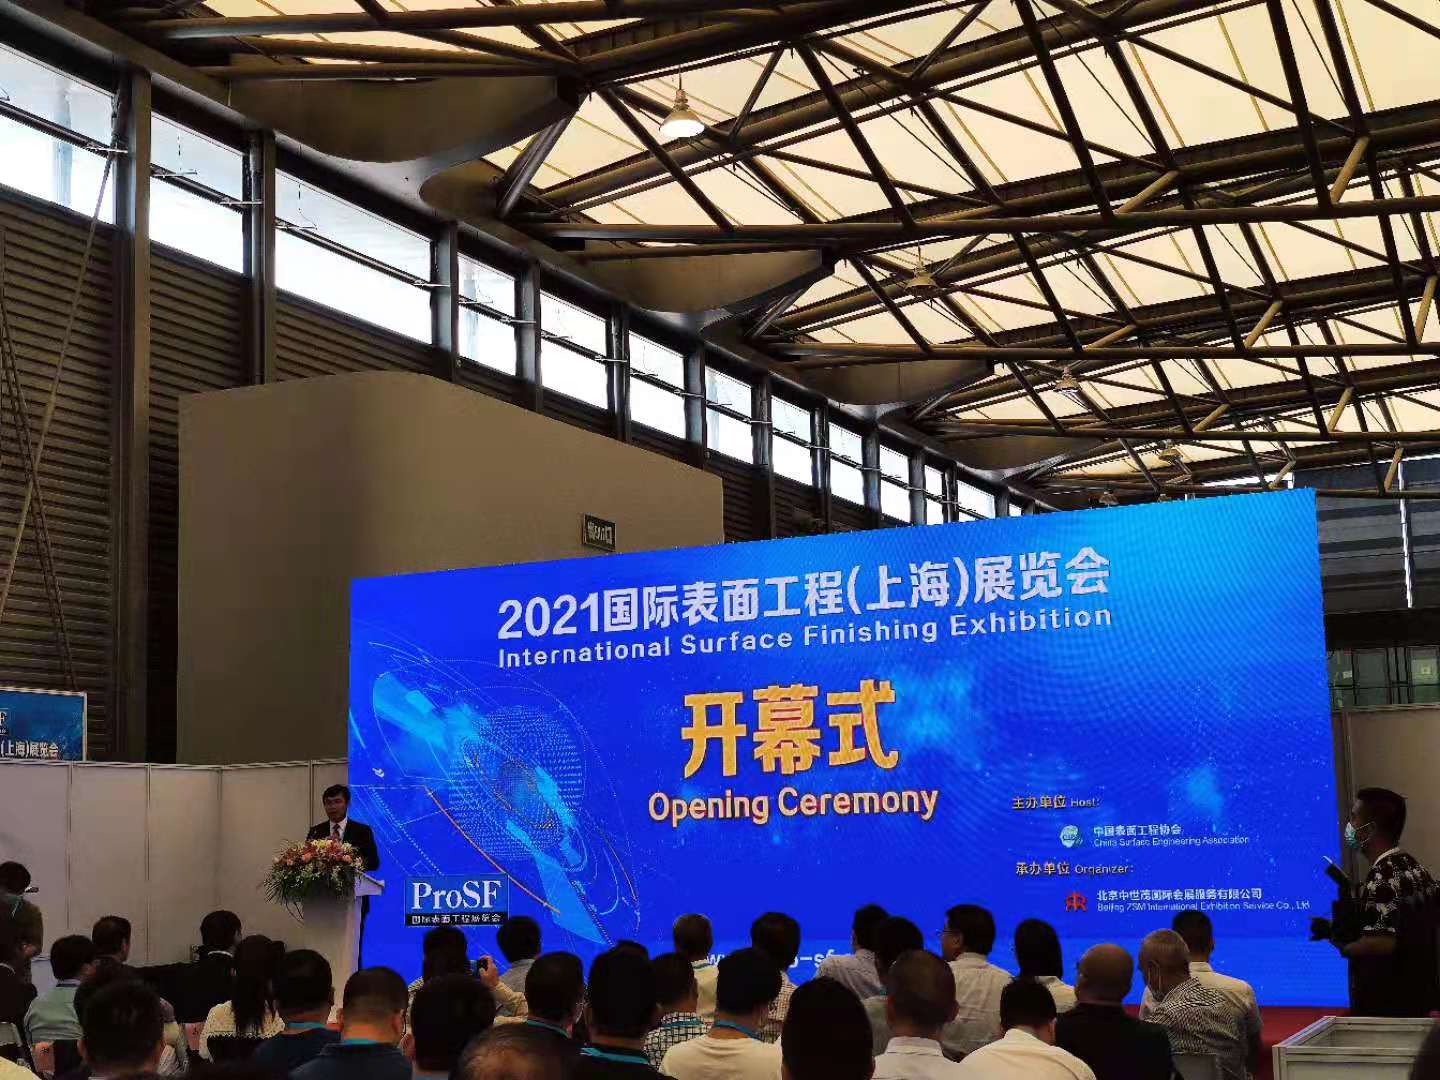 太阳游戏城官网与您相约2021国际表面工程(上海)展览会